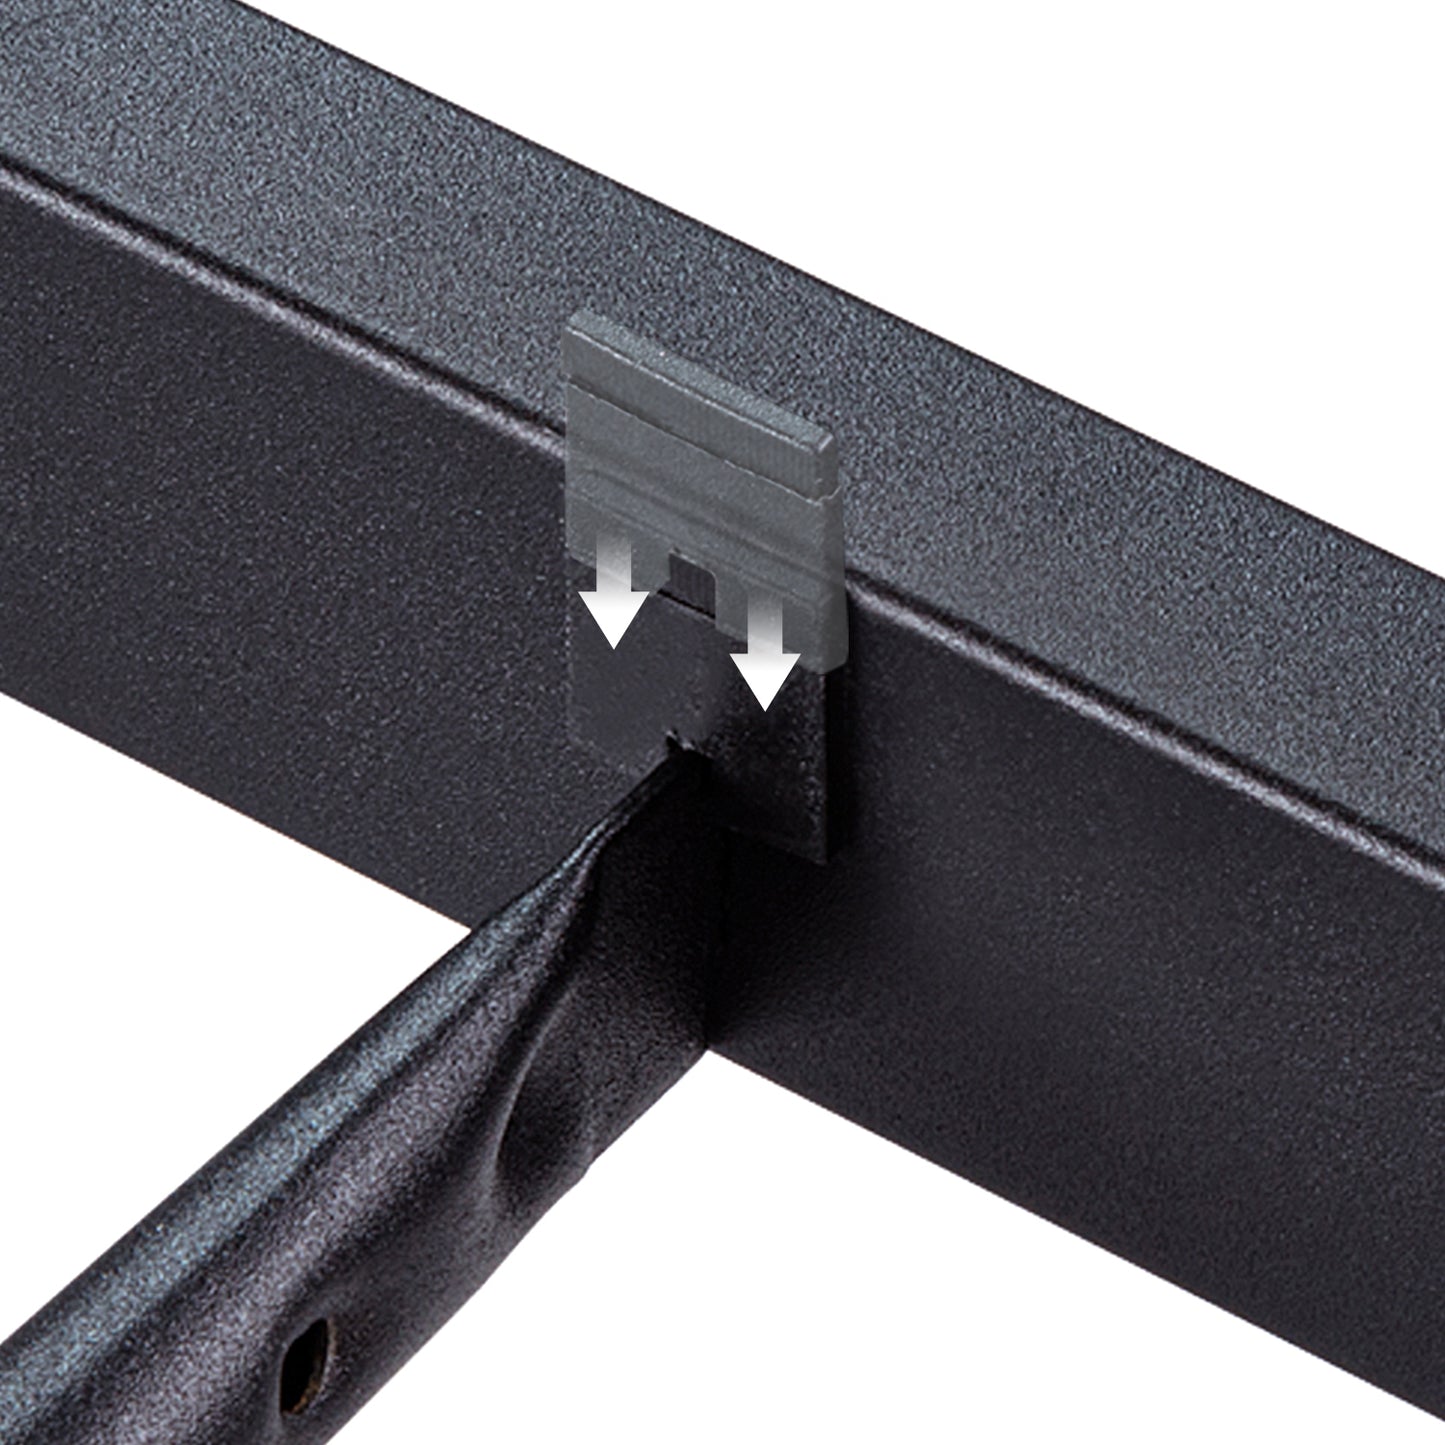 Allewie Brown Metal Platform Bed Frame with Industrial Rivet Headboard and Deep Grey Frame